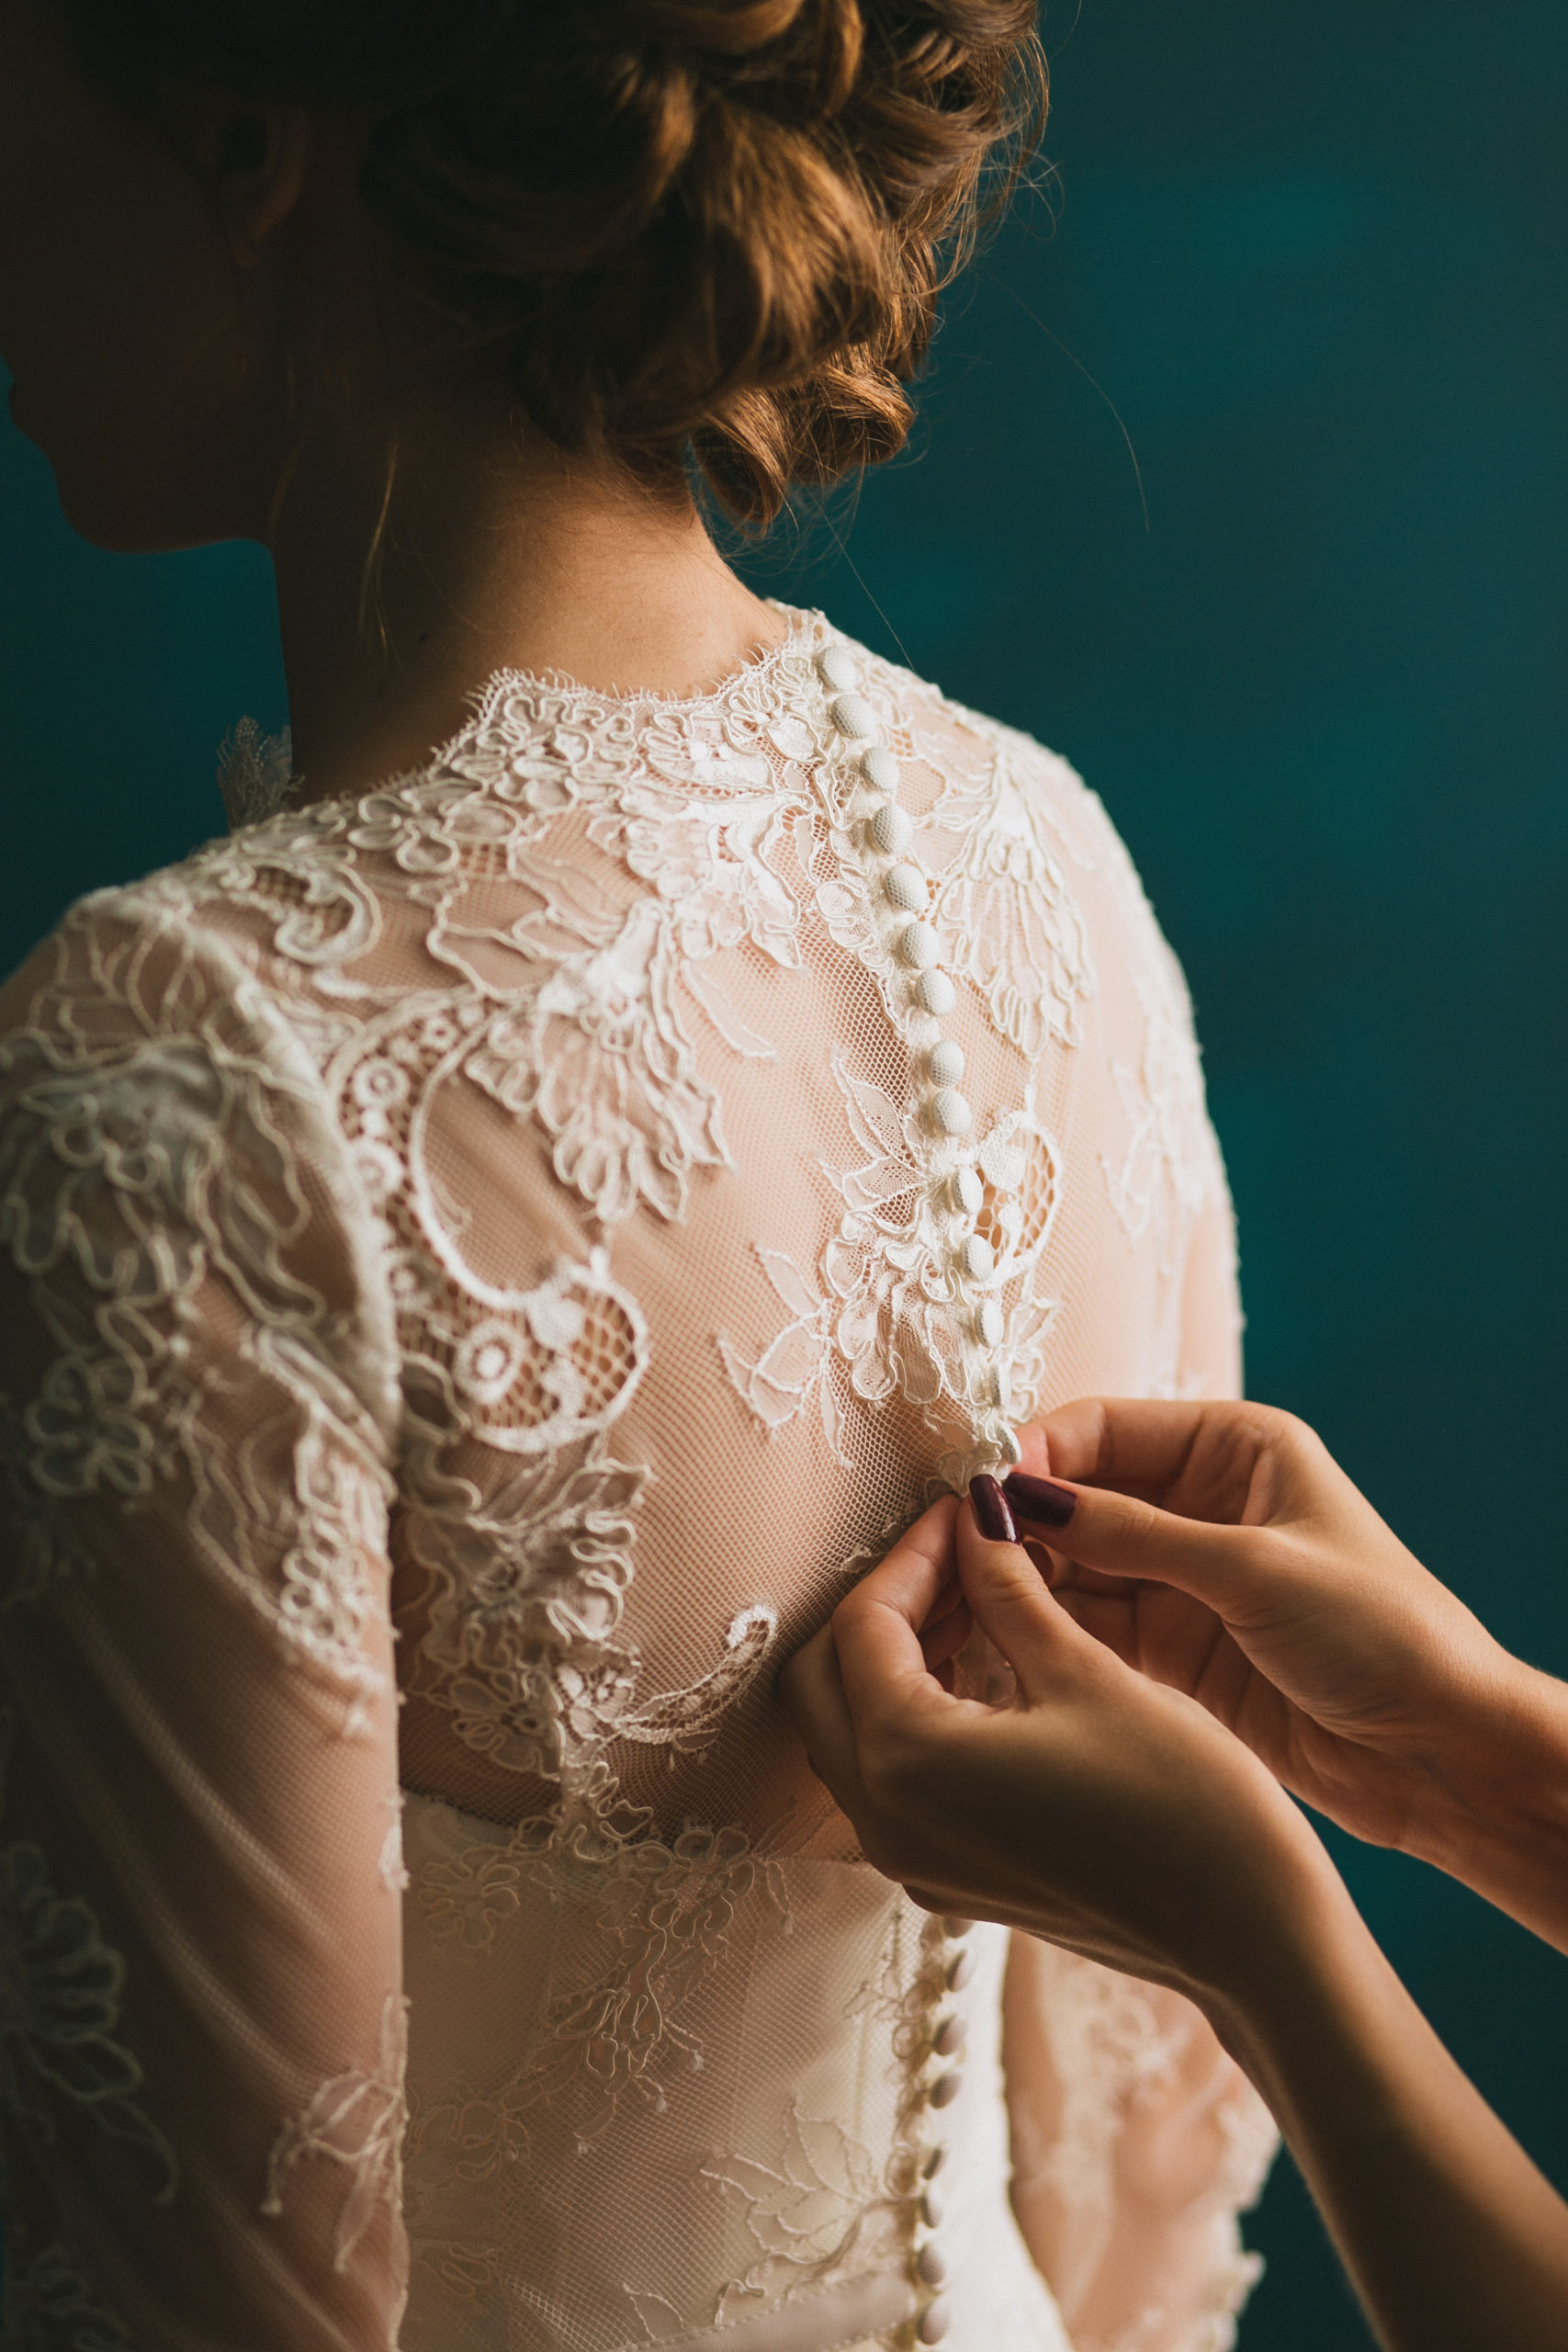 Braut probiert Secondhand Kleid vor Hochzeit an